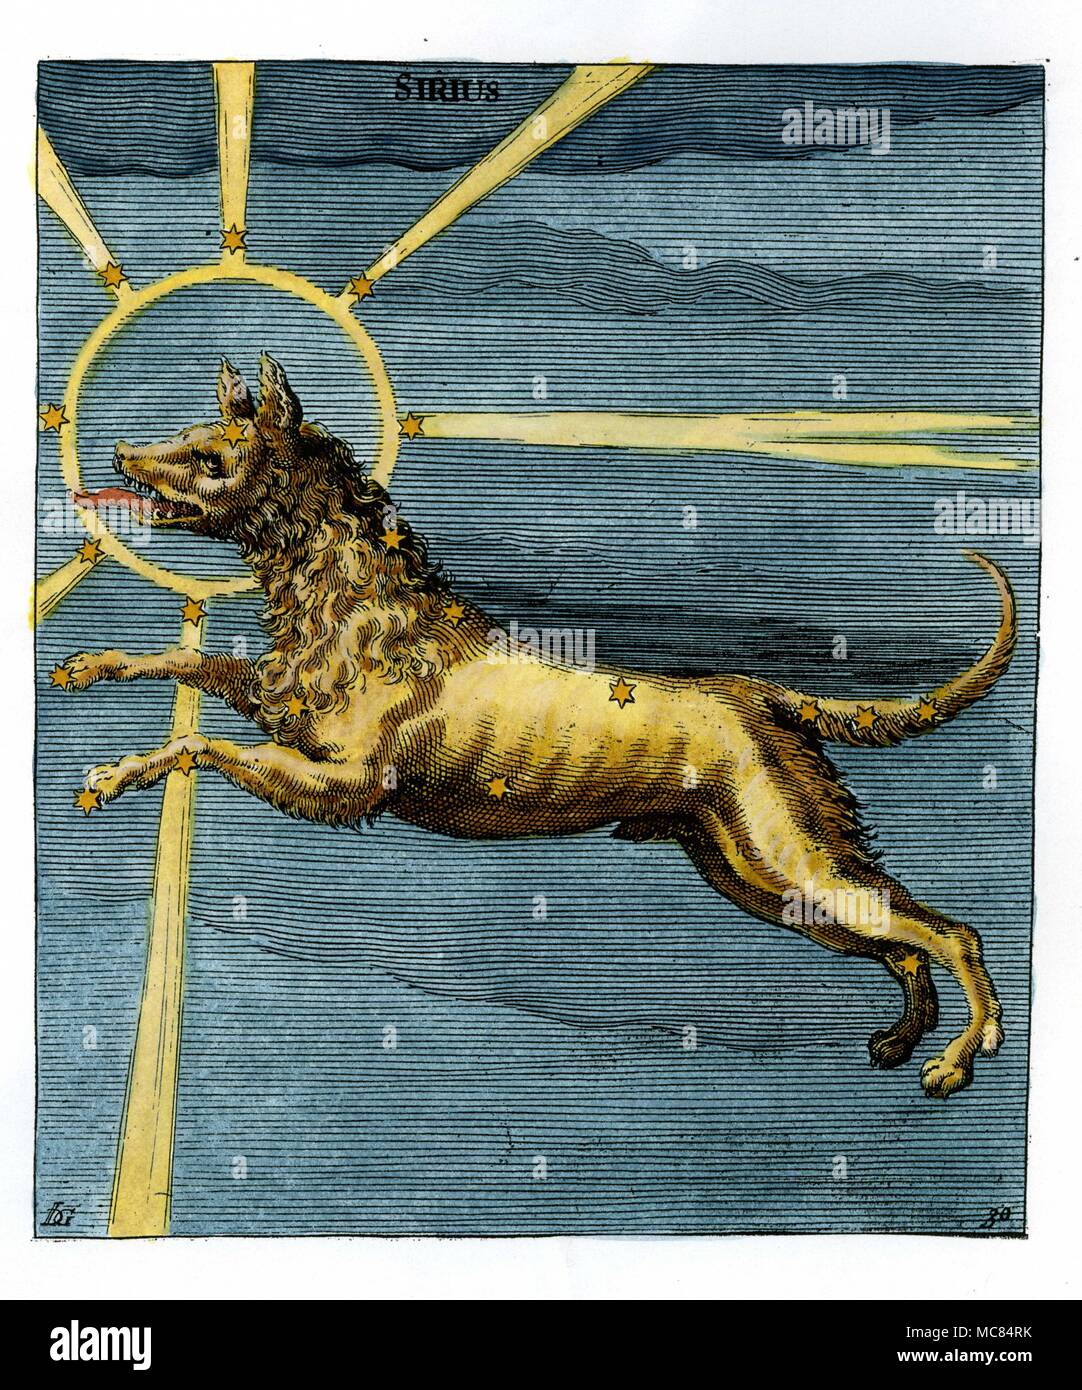 Image de la constellation Canis Major - même si l'impression est elle-même marquée [en haut] avec le nom de Sirius, qui désigne la grande étoile dans l'astérisme. Dix-sept siècle gravure colord à la main, basé sur le neuvième siècle Aratus illumination dans Leiden. Aratus est né environ 315 avant J.-C., dans la région de Soli, et est l'auteur de la première star-book 'Phaenomena'. Banque D'Images